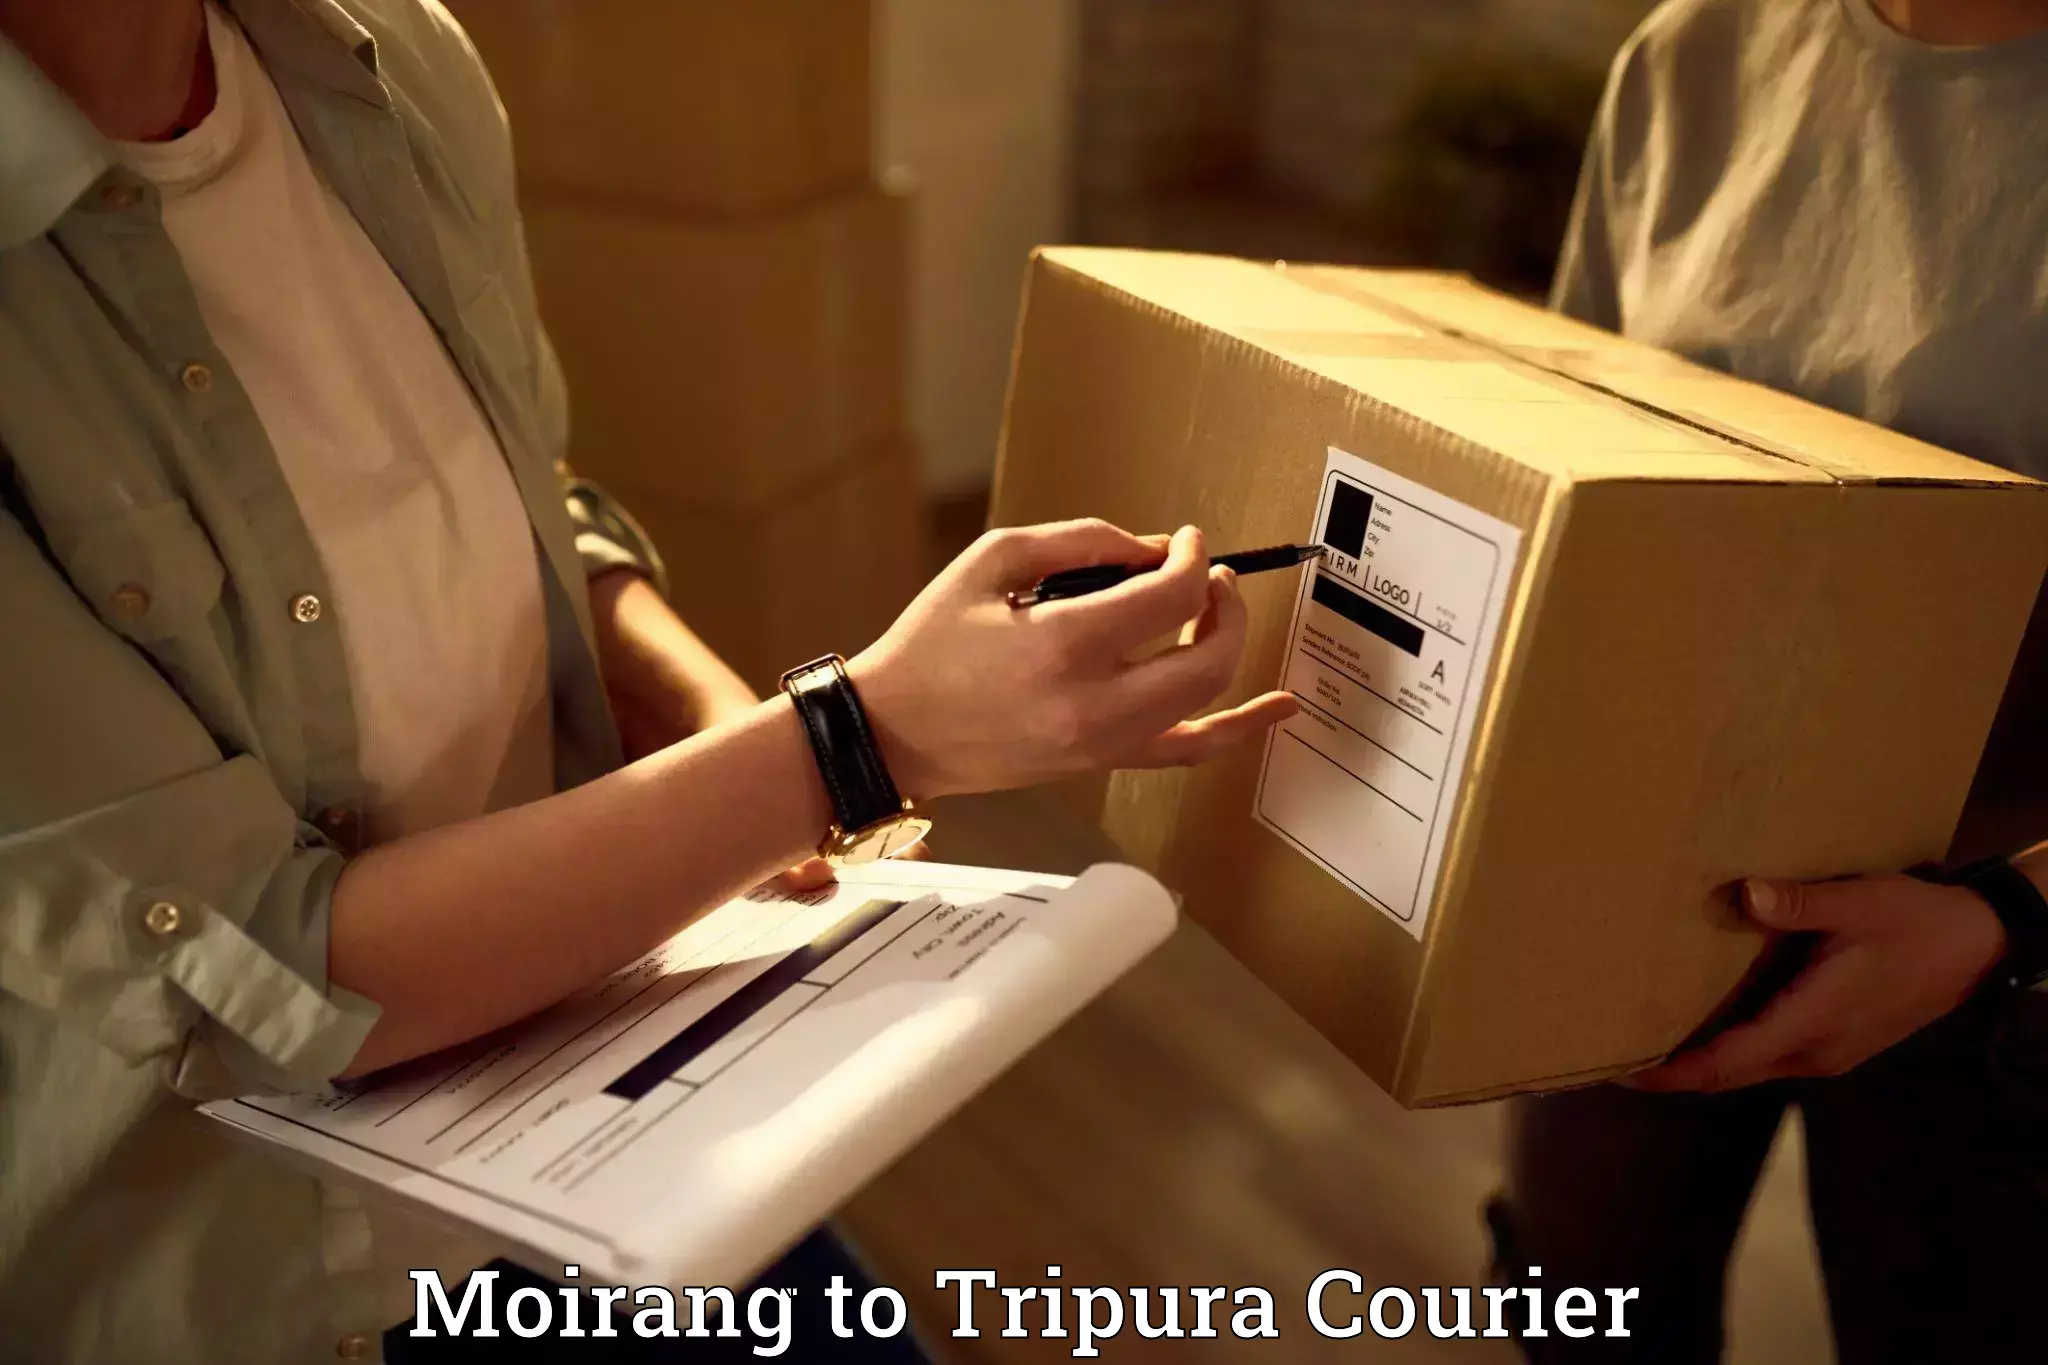 Furniture transport experts Moirang to Tripura